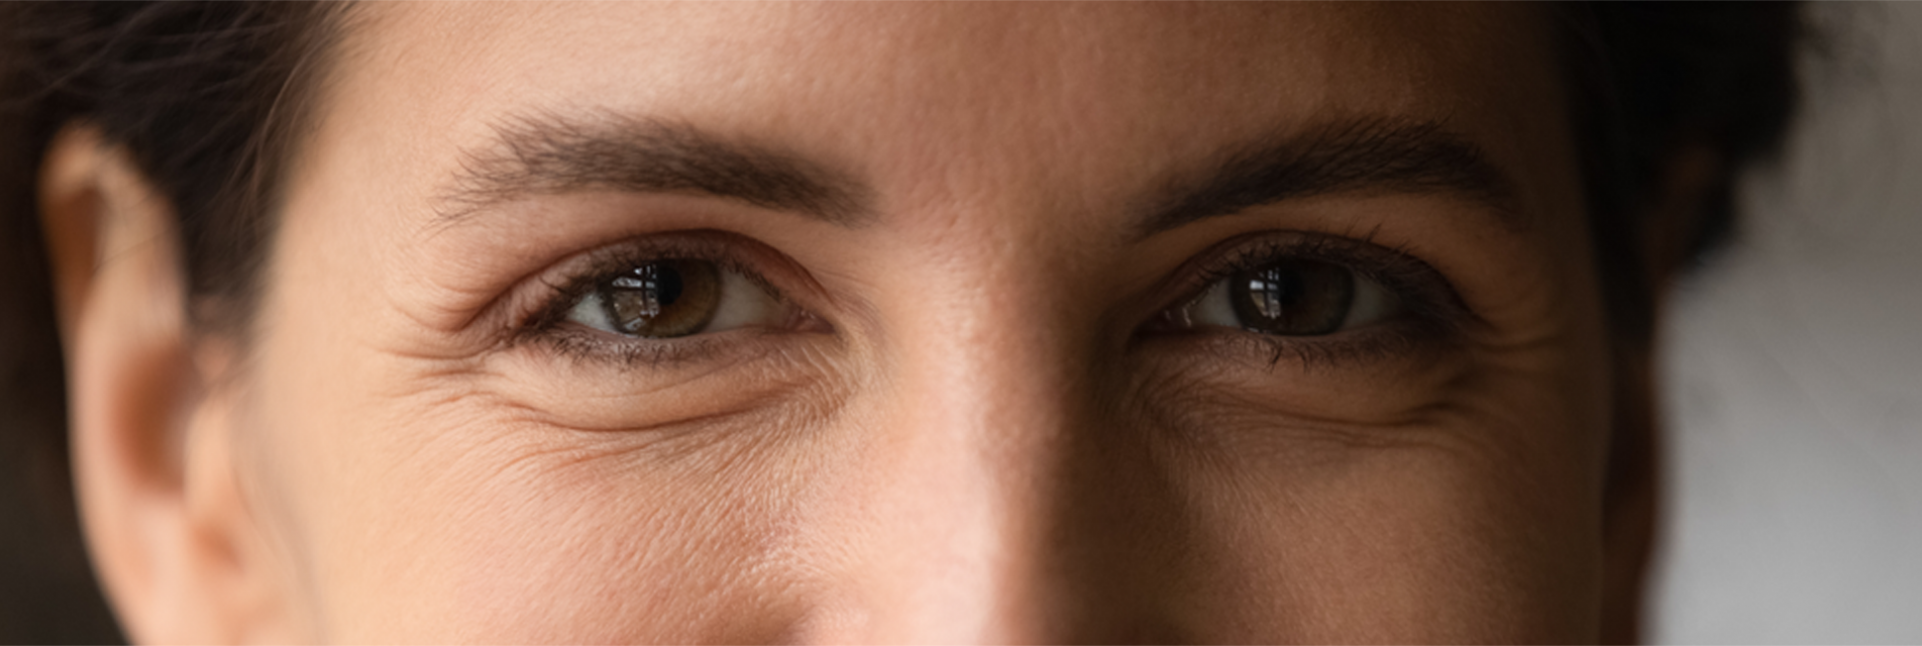 Ojos llorosos y lagrimeo: causas y tratamiento